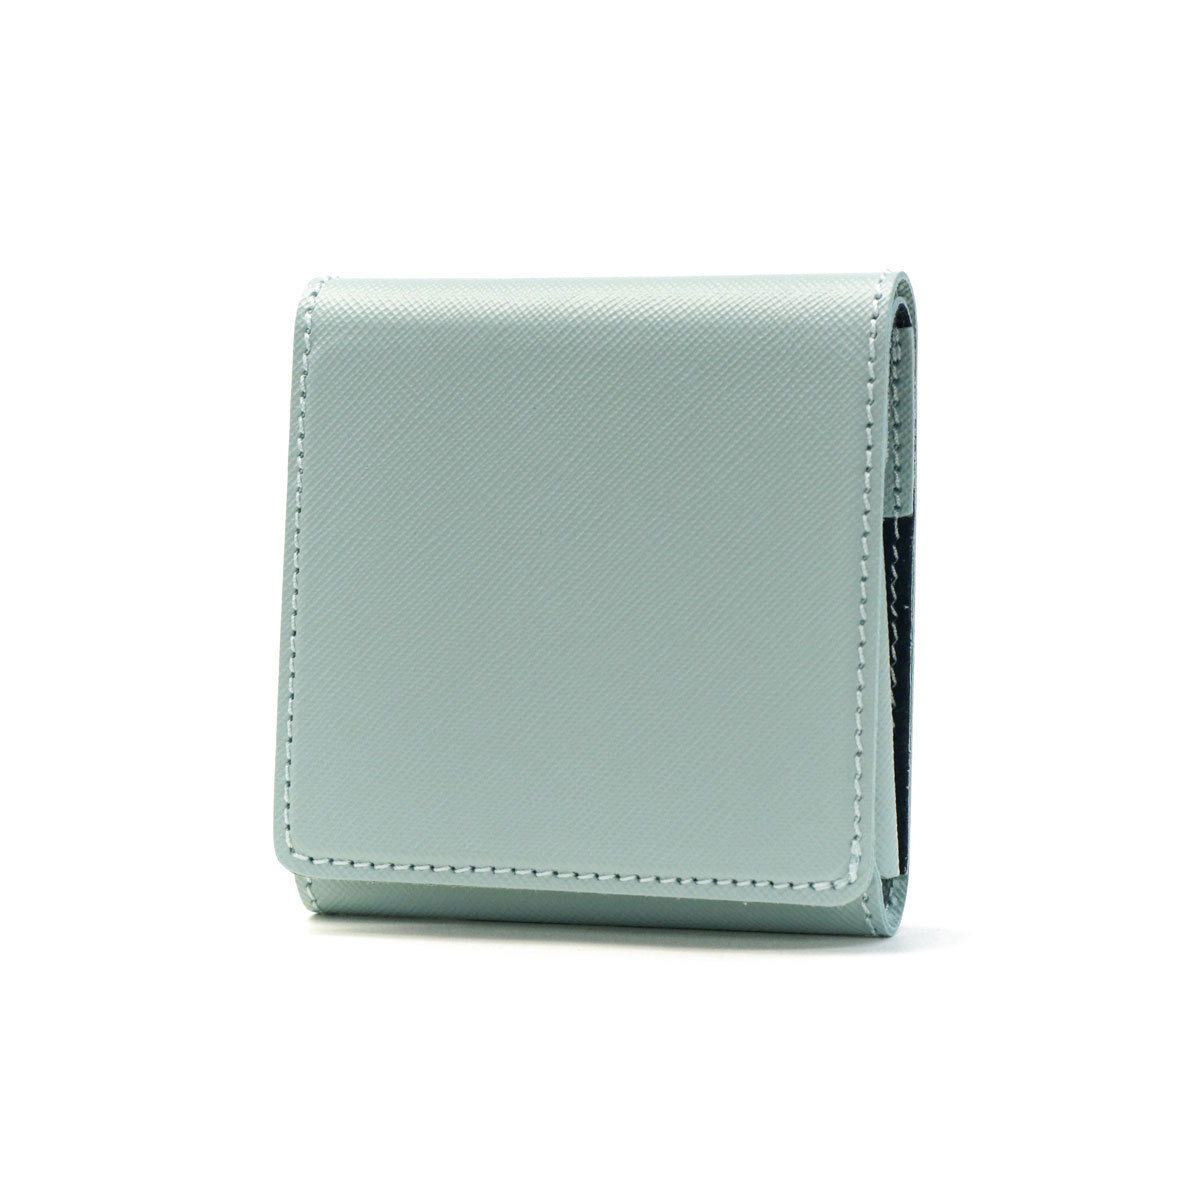 二つ折り財布 com-ono 財布 二つ折り Slim Series smart fold wallet